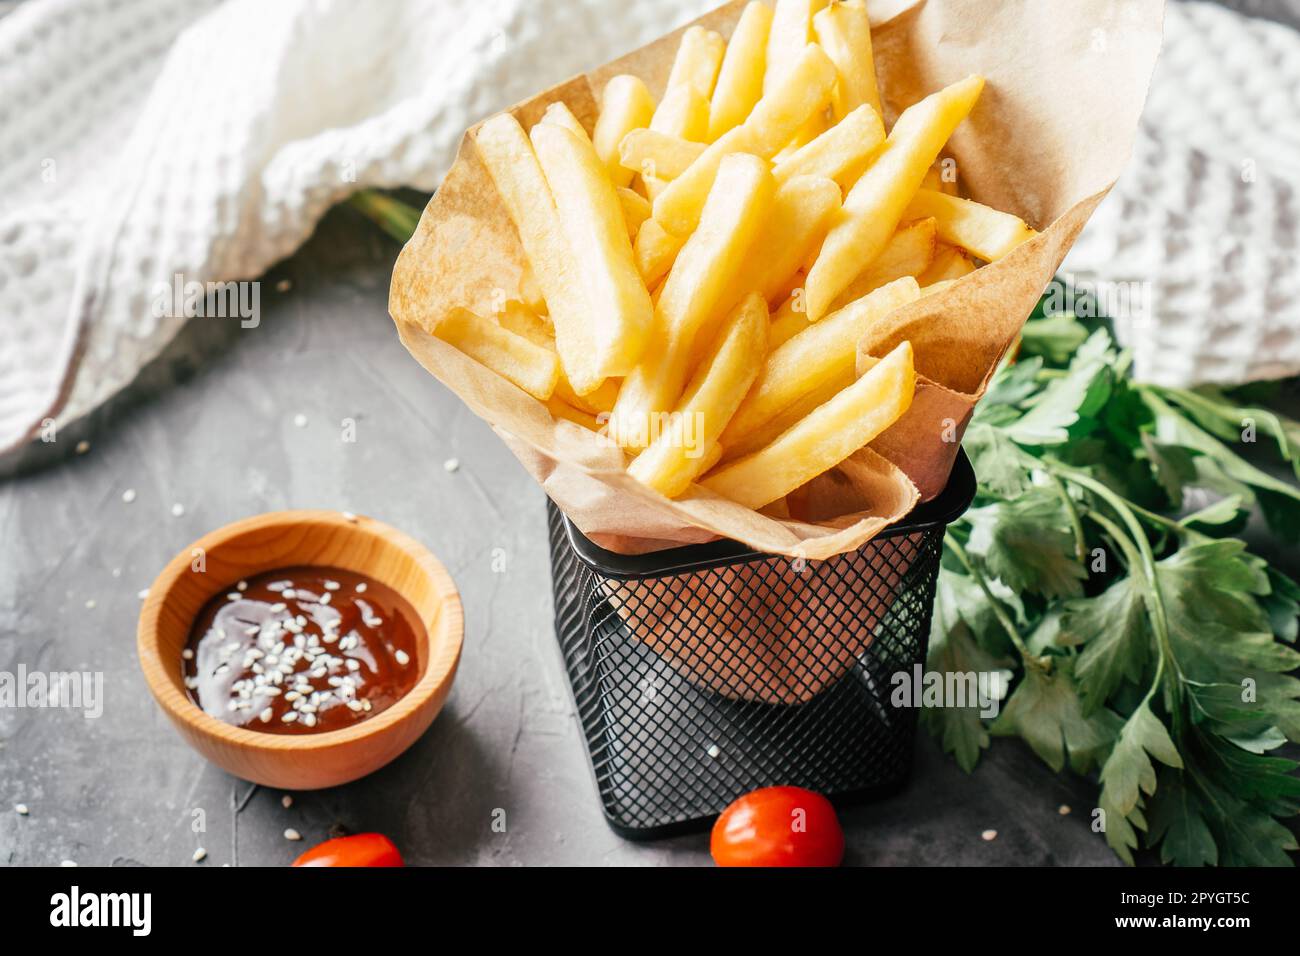 Grande portion de frites en papier artisanal avec sauce barbecue, graines de sésame, tomates cerises et persil vert Banque D'Images